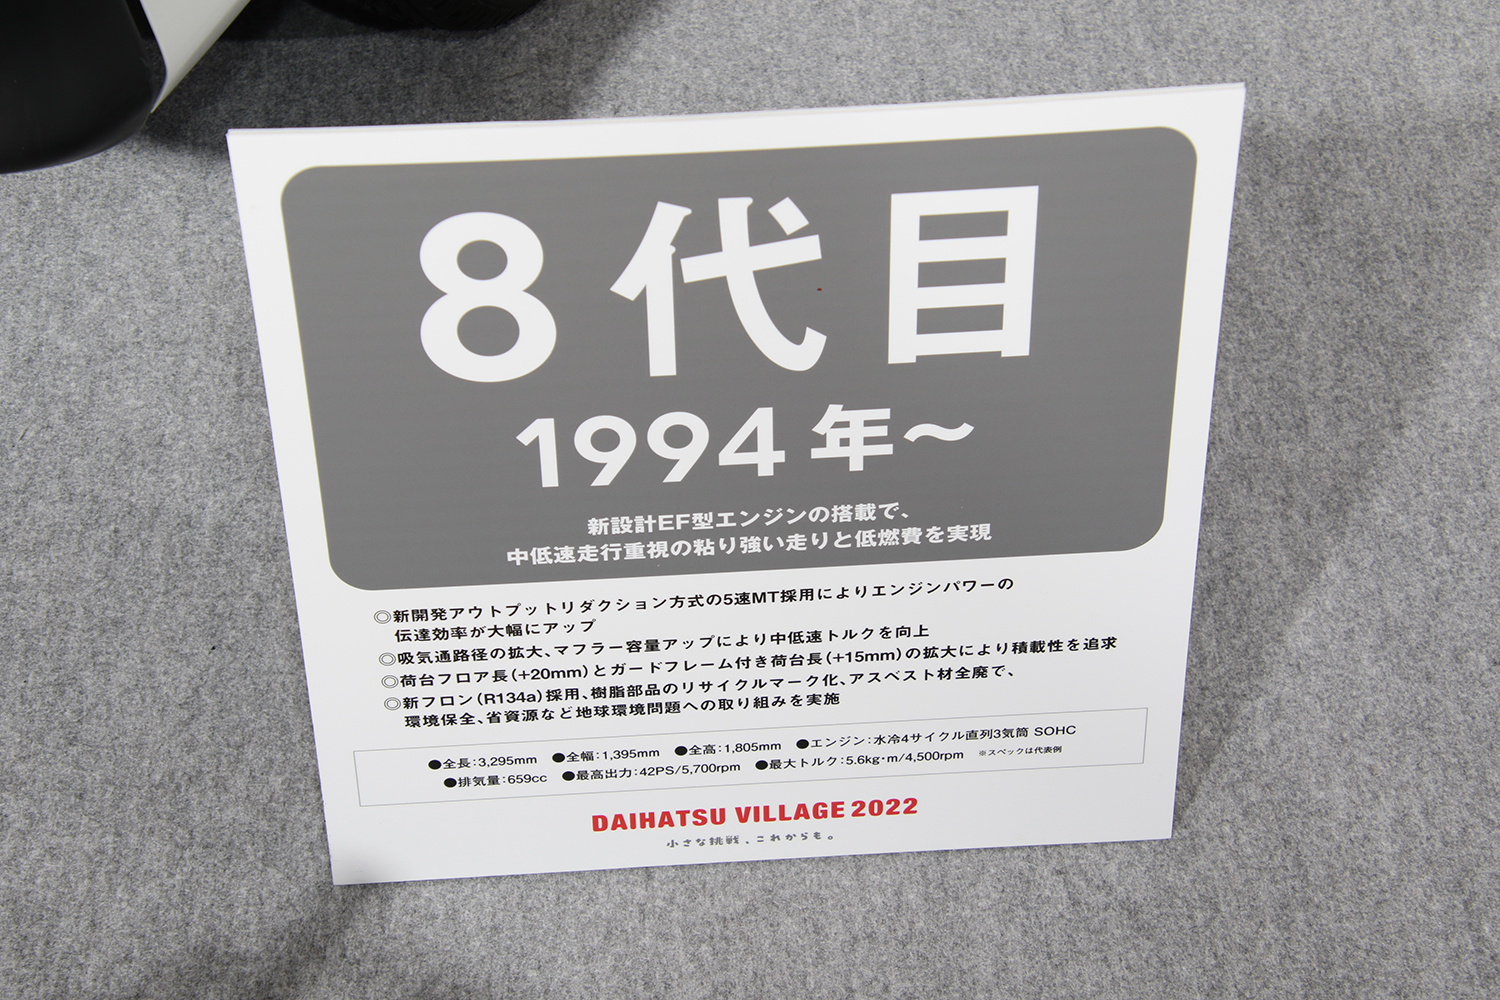 大阪オートメッセ2022のダイハツブース